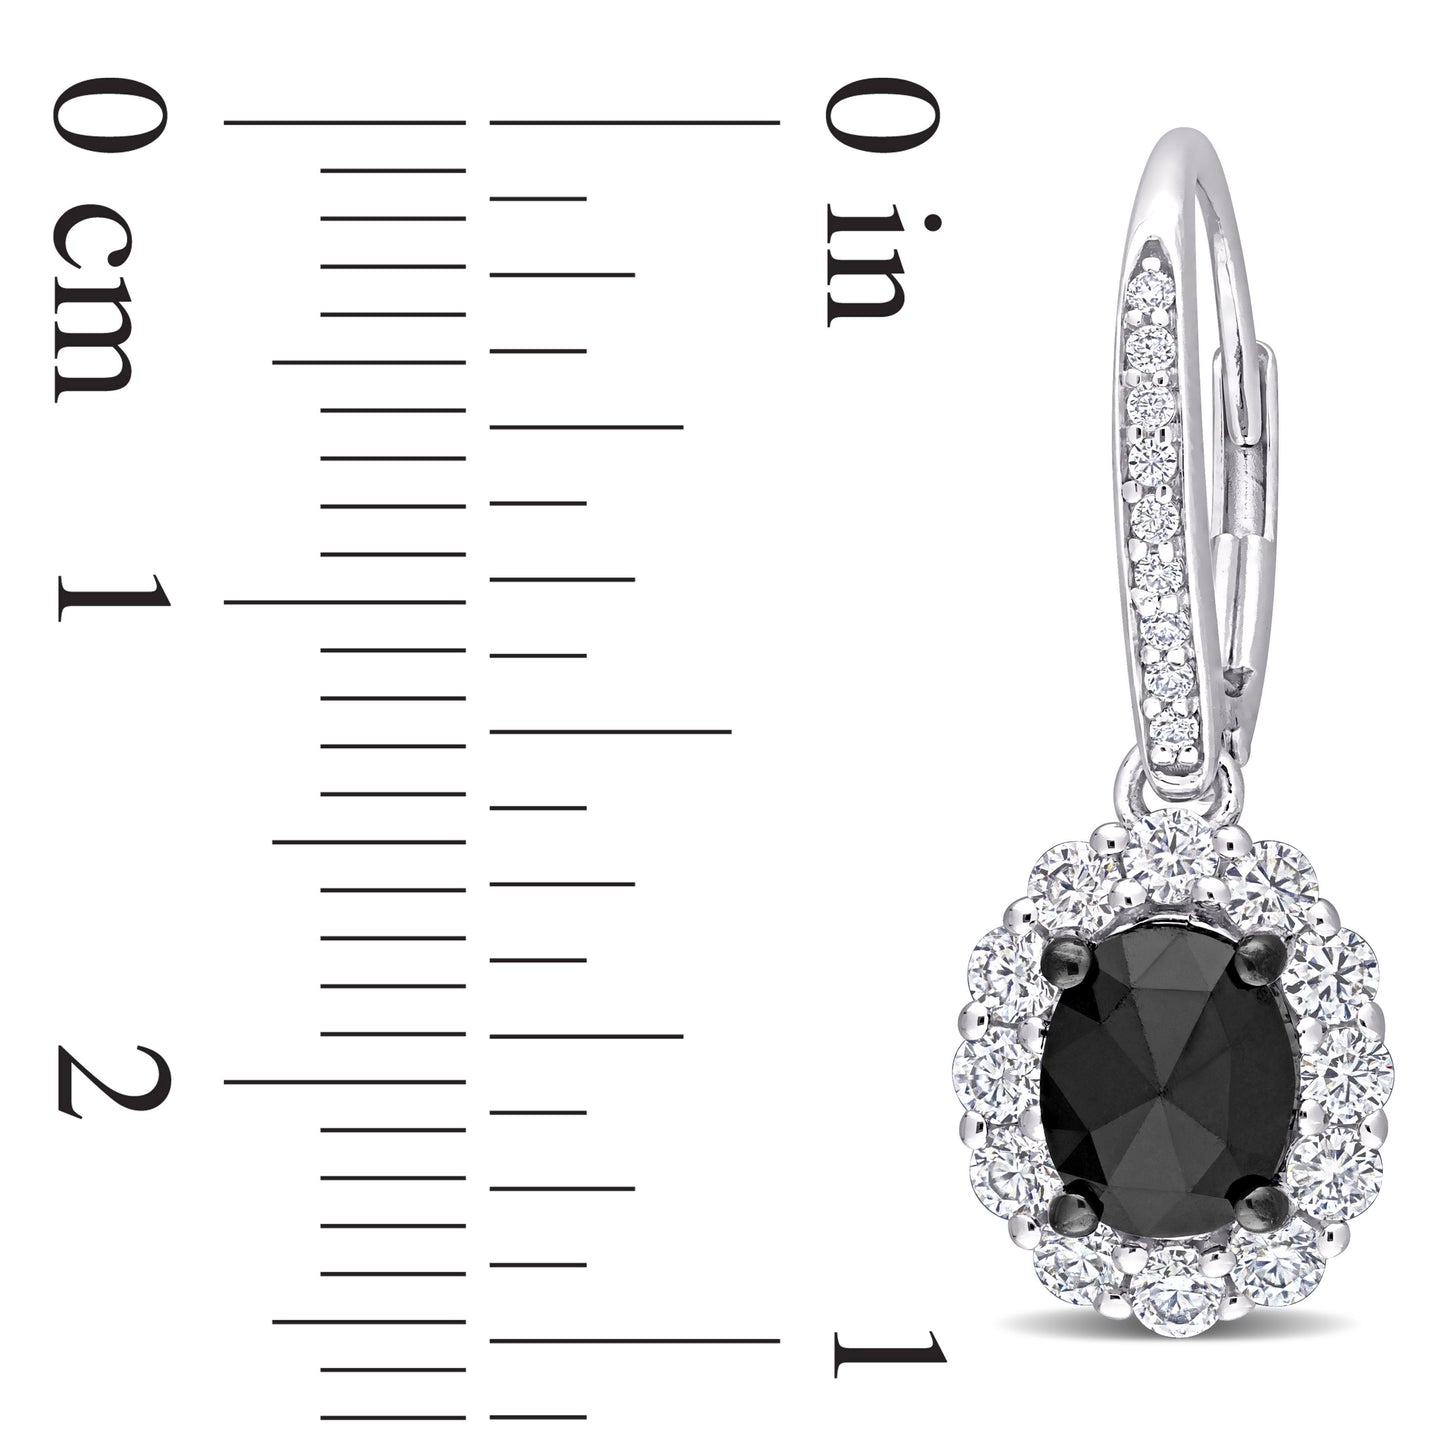 Oval Black Diamond & Moissanite Earrings in 10k White Gold